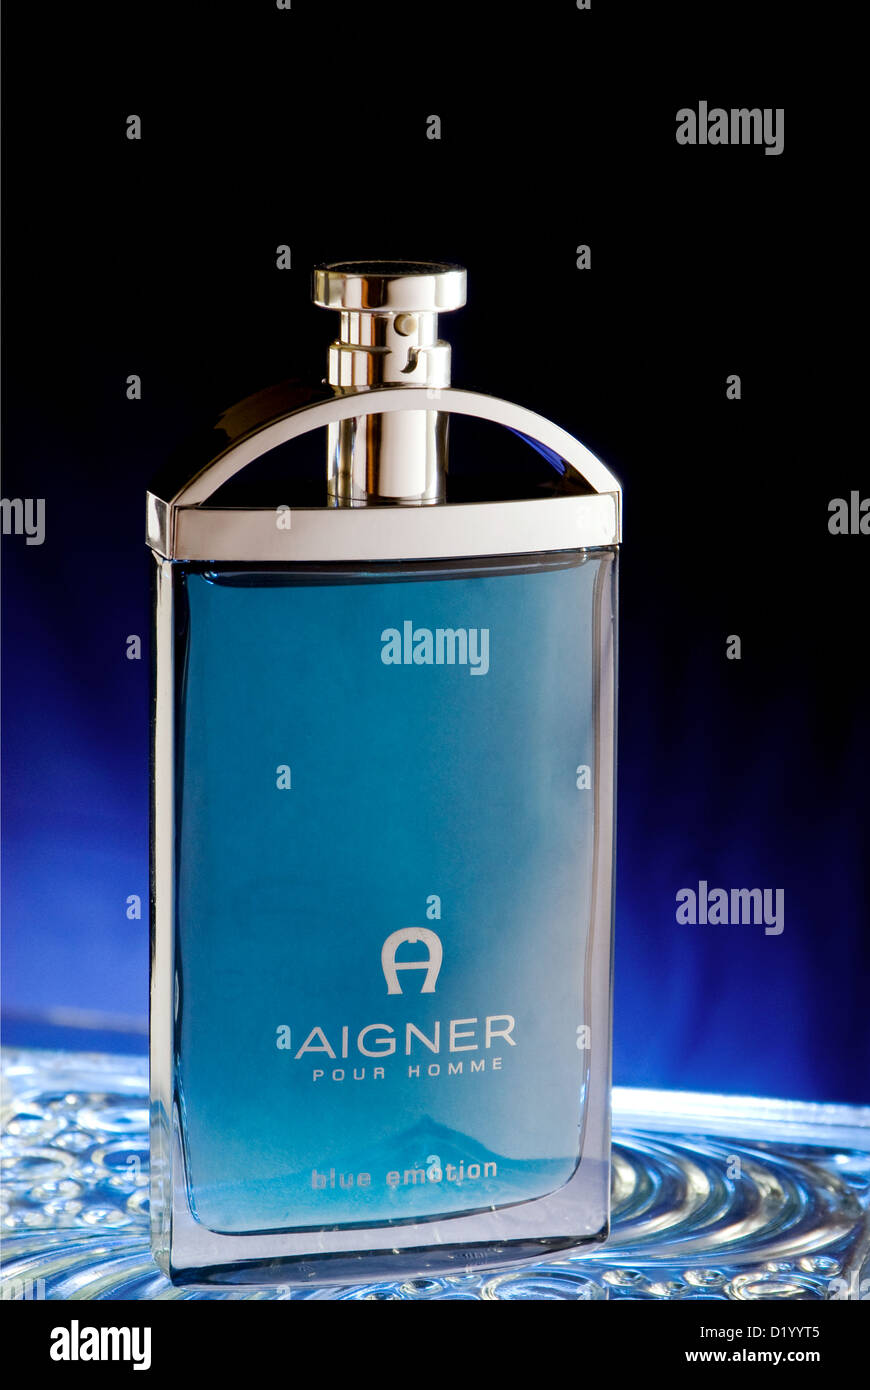 Aigner perfume Stock Photo - Alamy